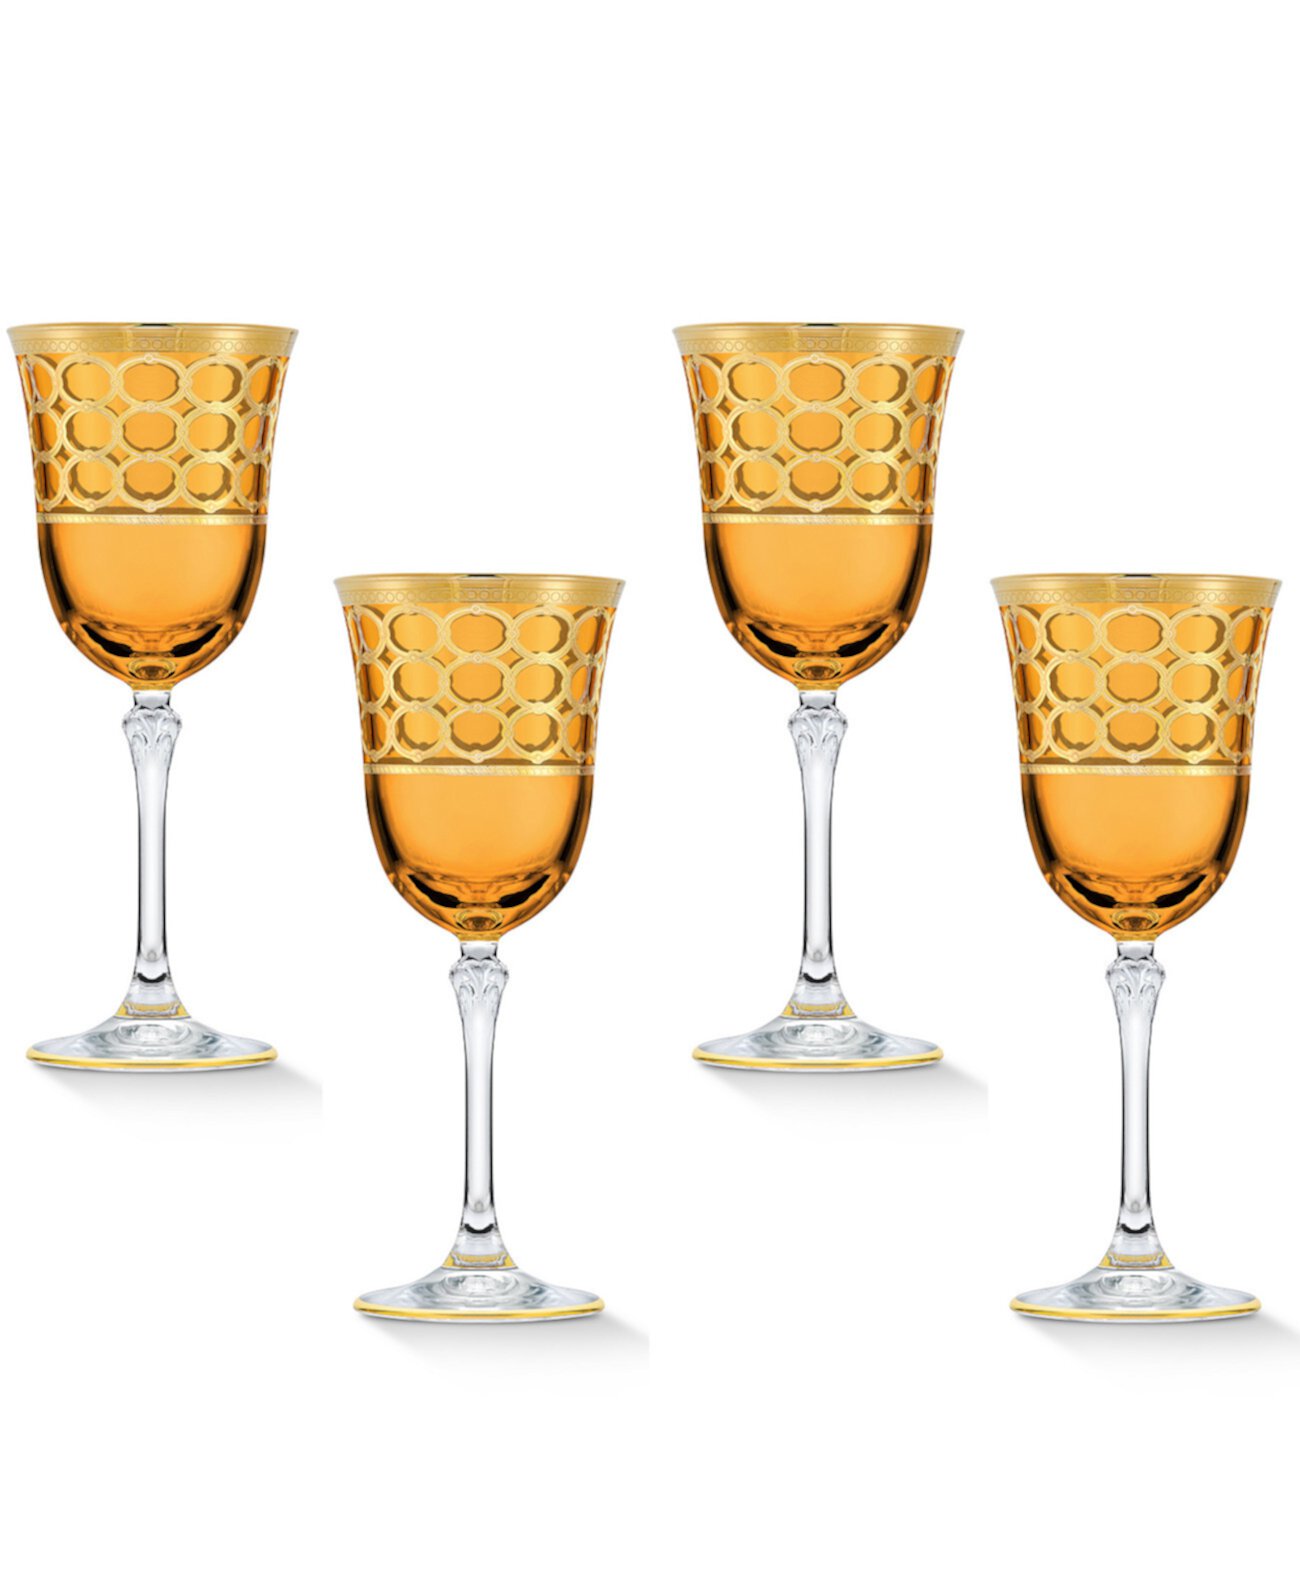 Бокал для белого вина янтарного цвета с золотистыми кольцами, набор из 4 шт. Lorpen